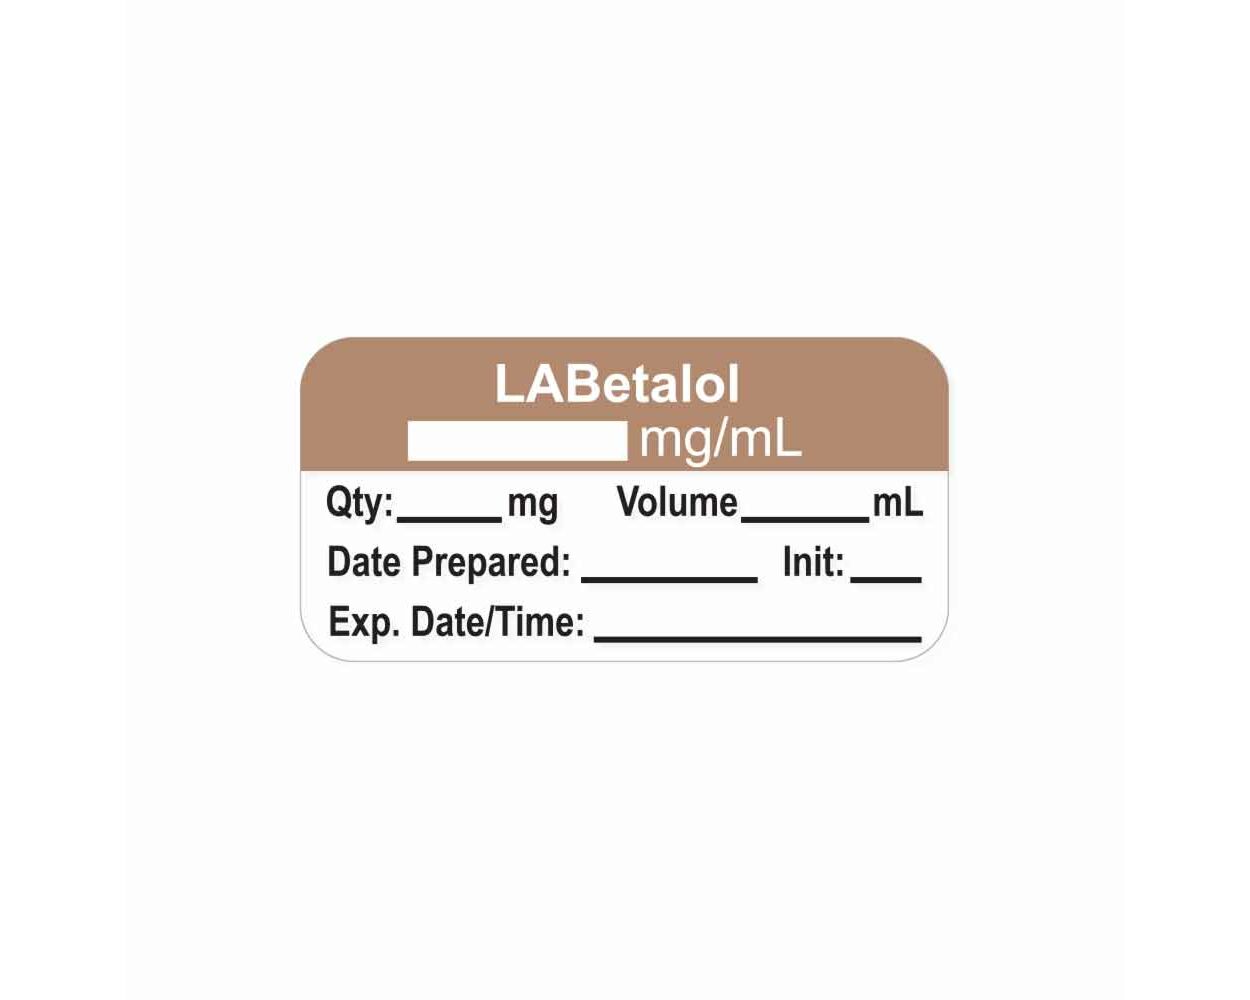 Anesthesia information - Lebetalol